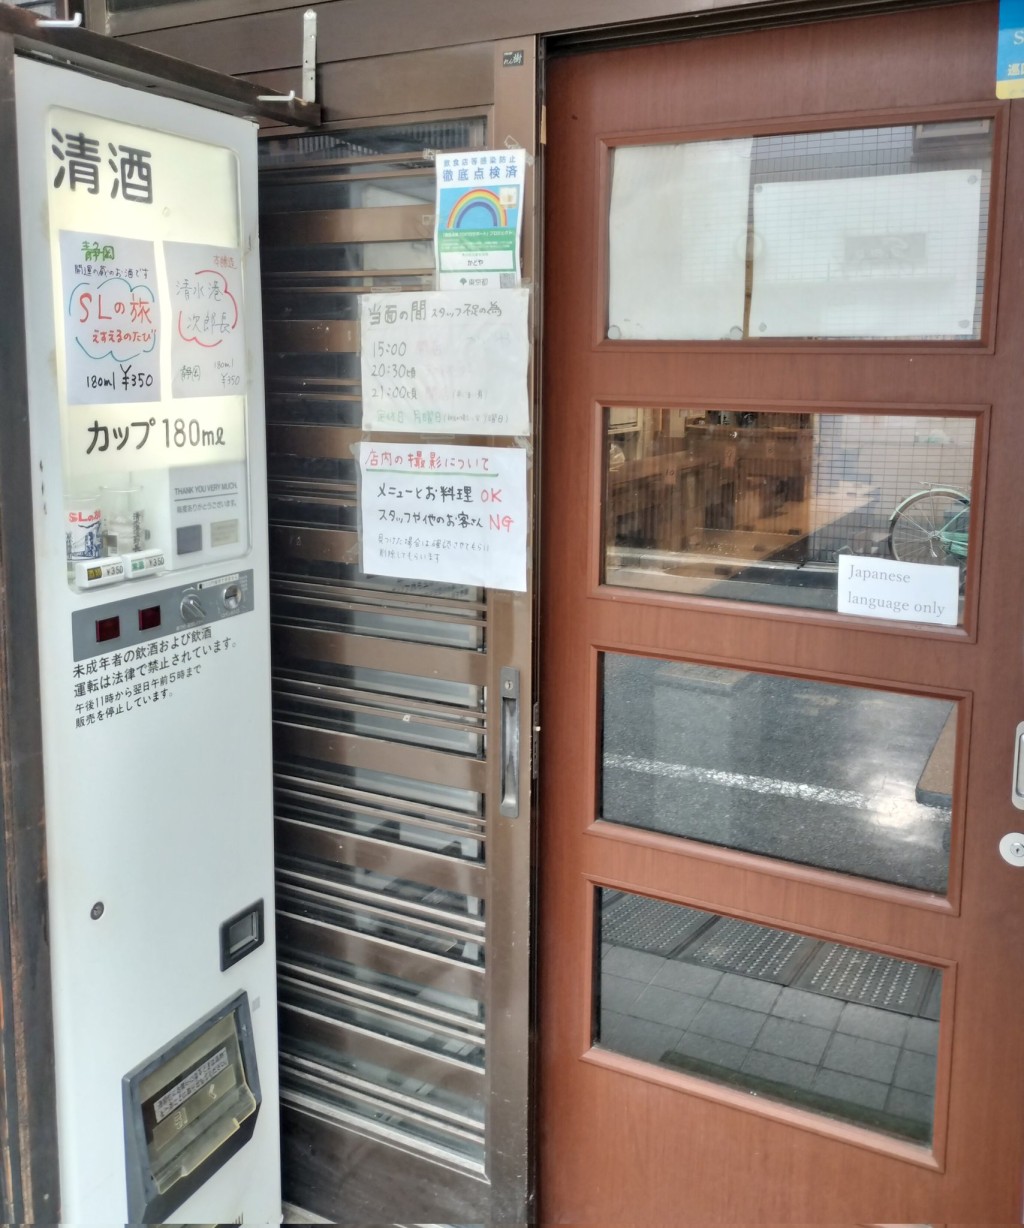 东京居酒屋“かどや”（Kadoya）入口贴出多张告示。 X